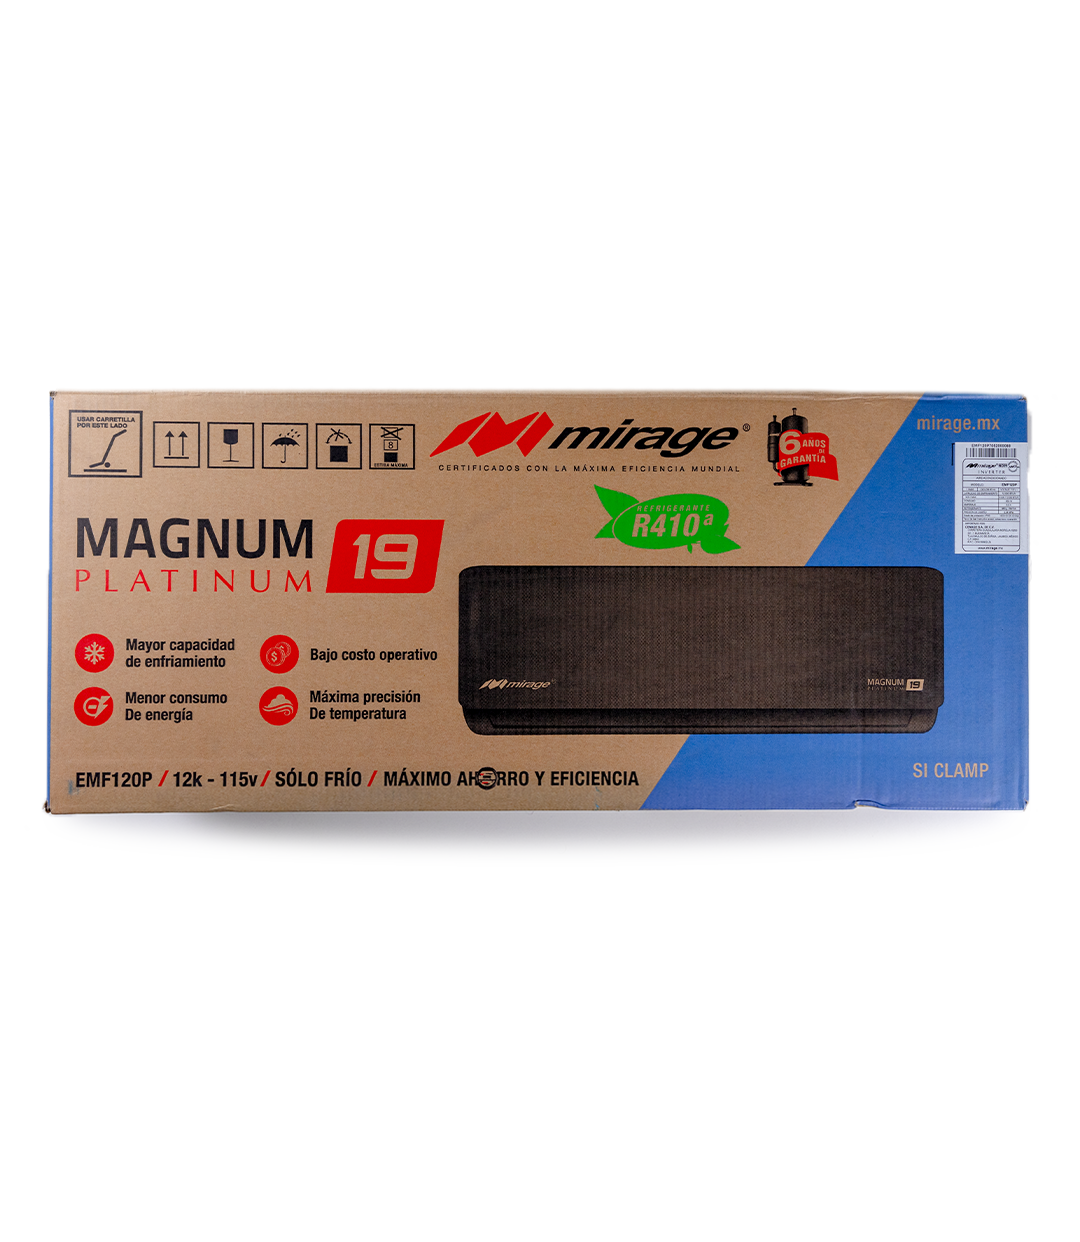 Magnum 19 Platinum 2 Toneladas a 220v